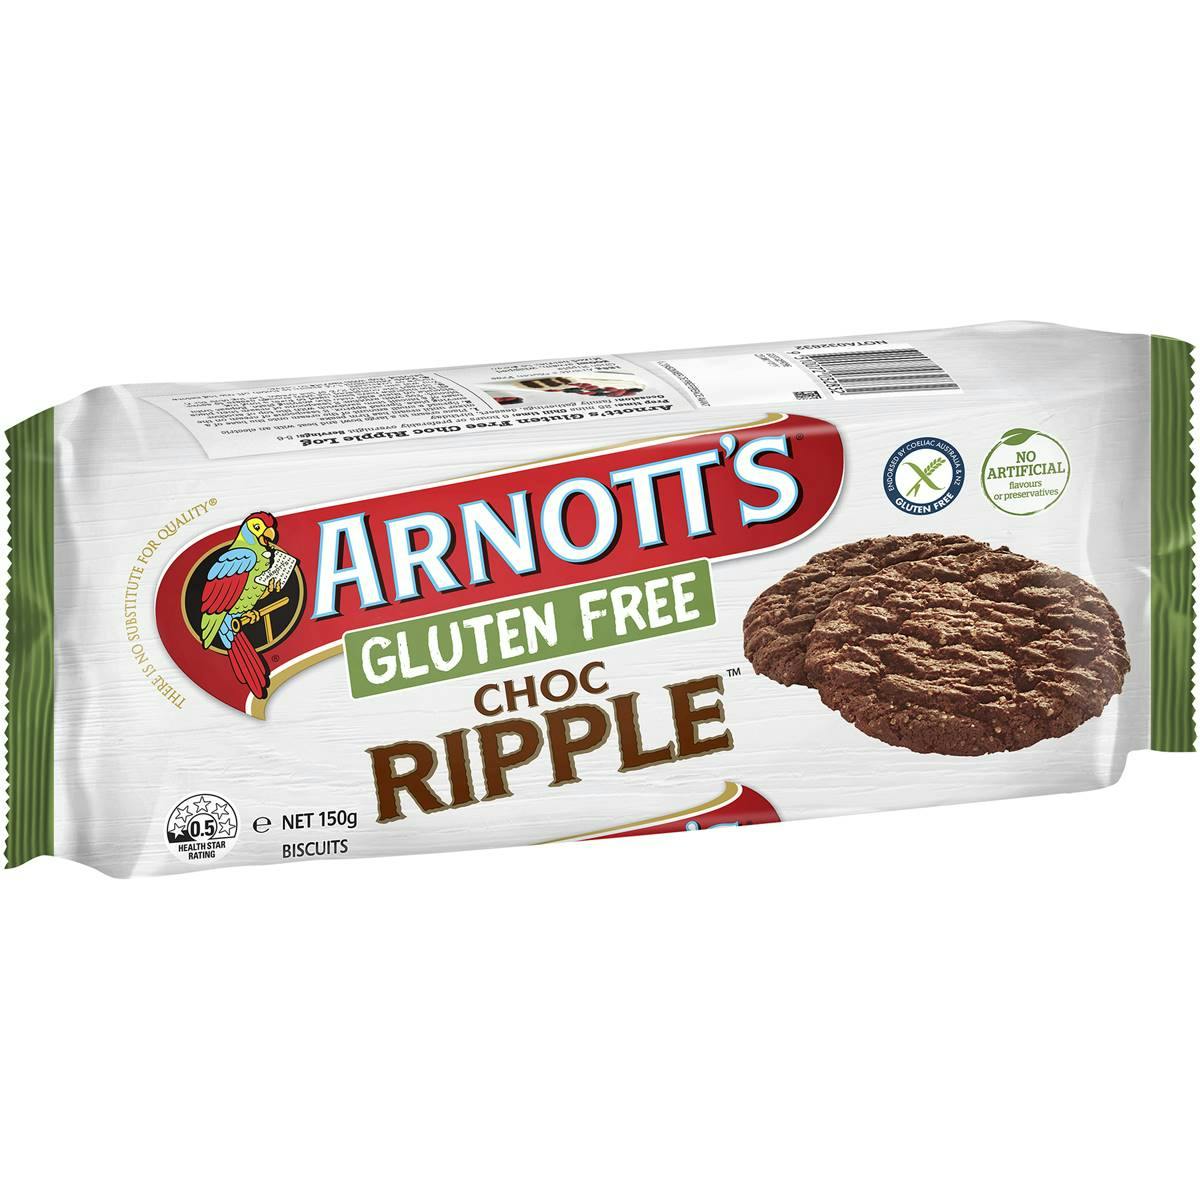 Arnott's Gluten Free Choc Ripple Biscuits